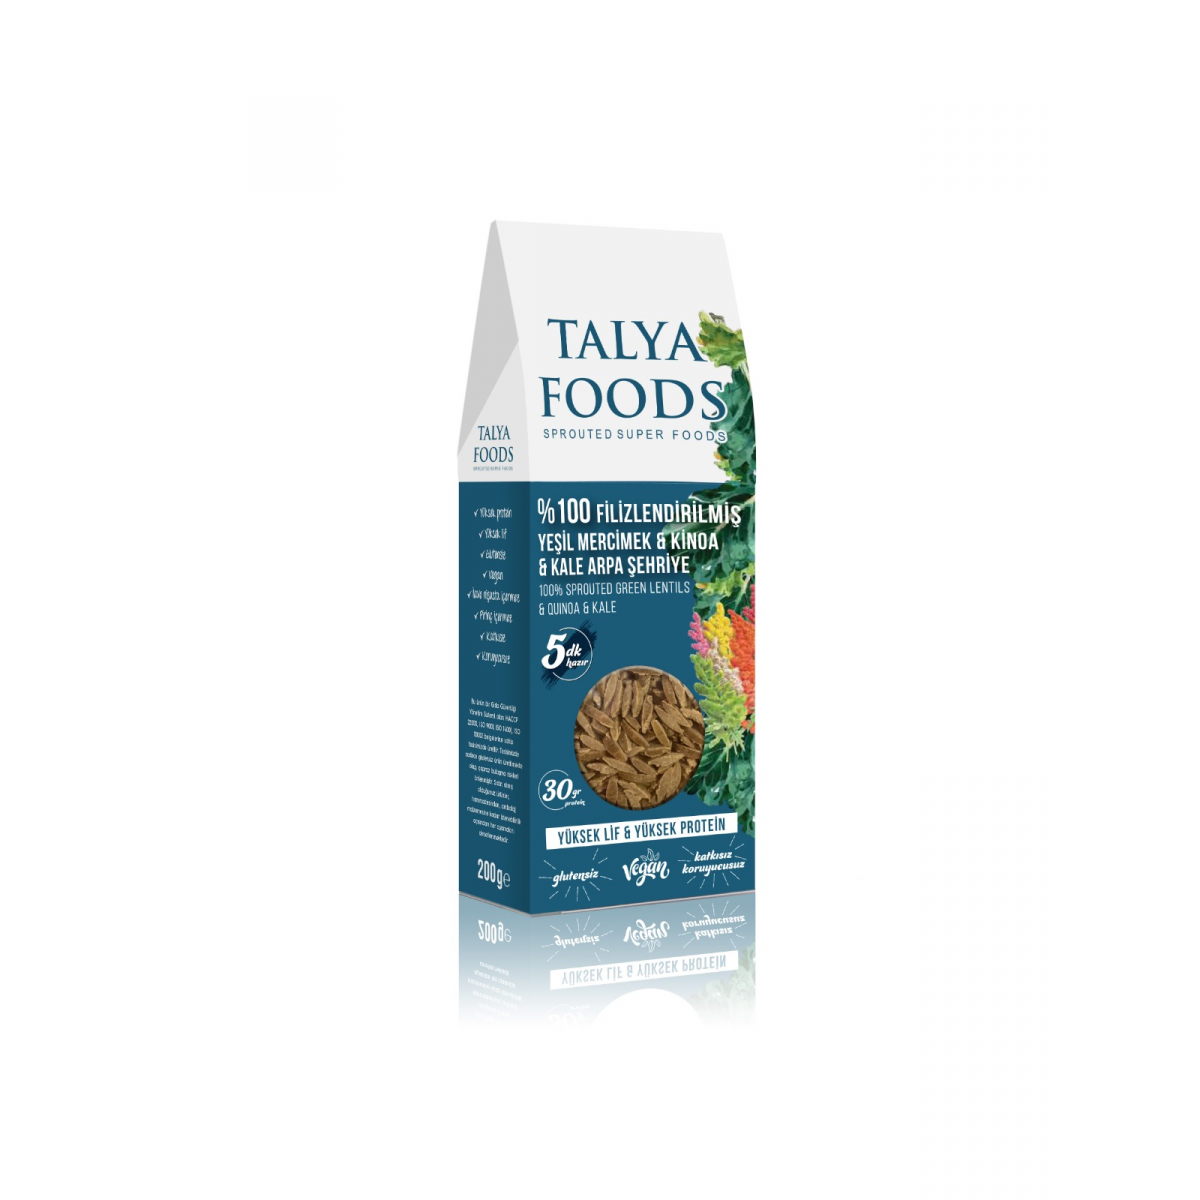 Talya Foods Filizlendirilmiş Yeşil Mercimek Kinoa Kale Yaprağı Şehriye 200 G